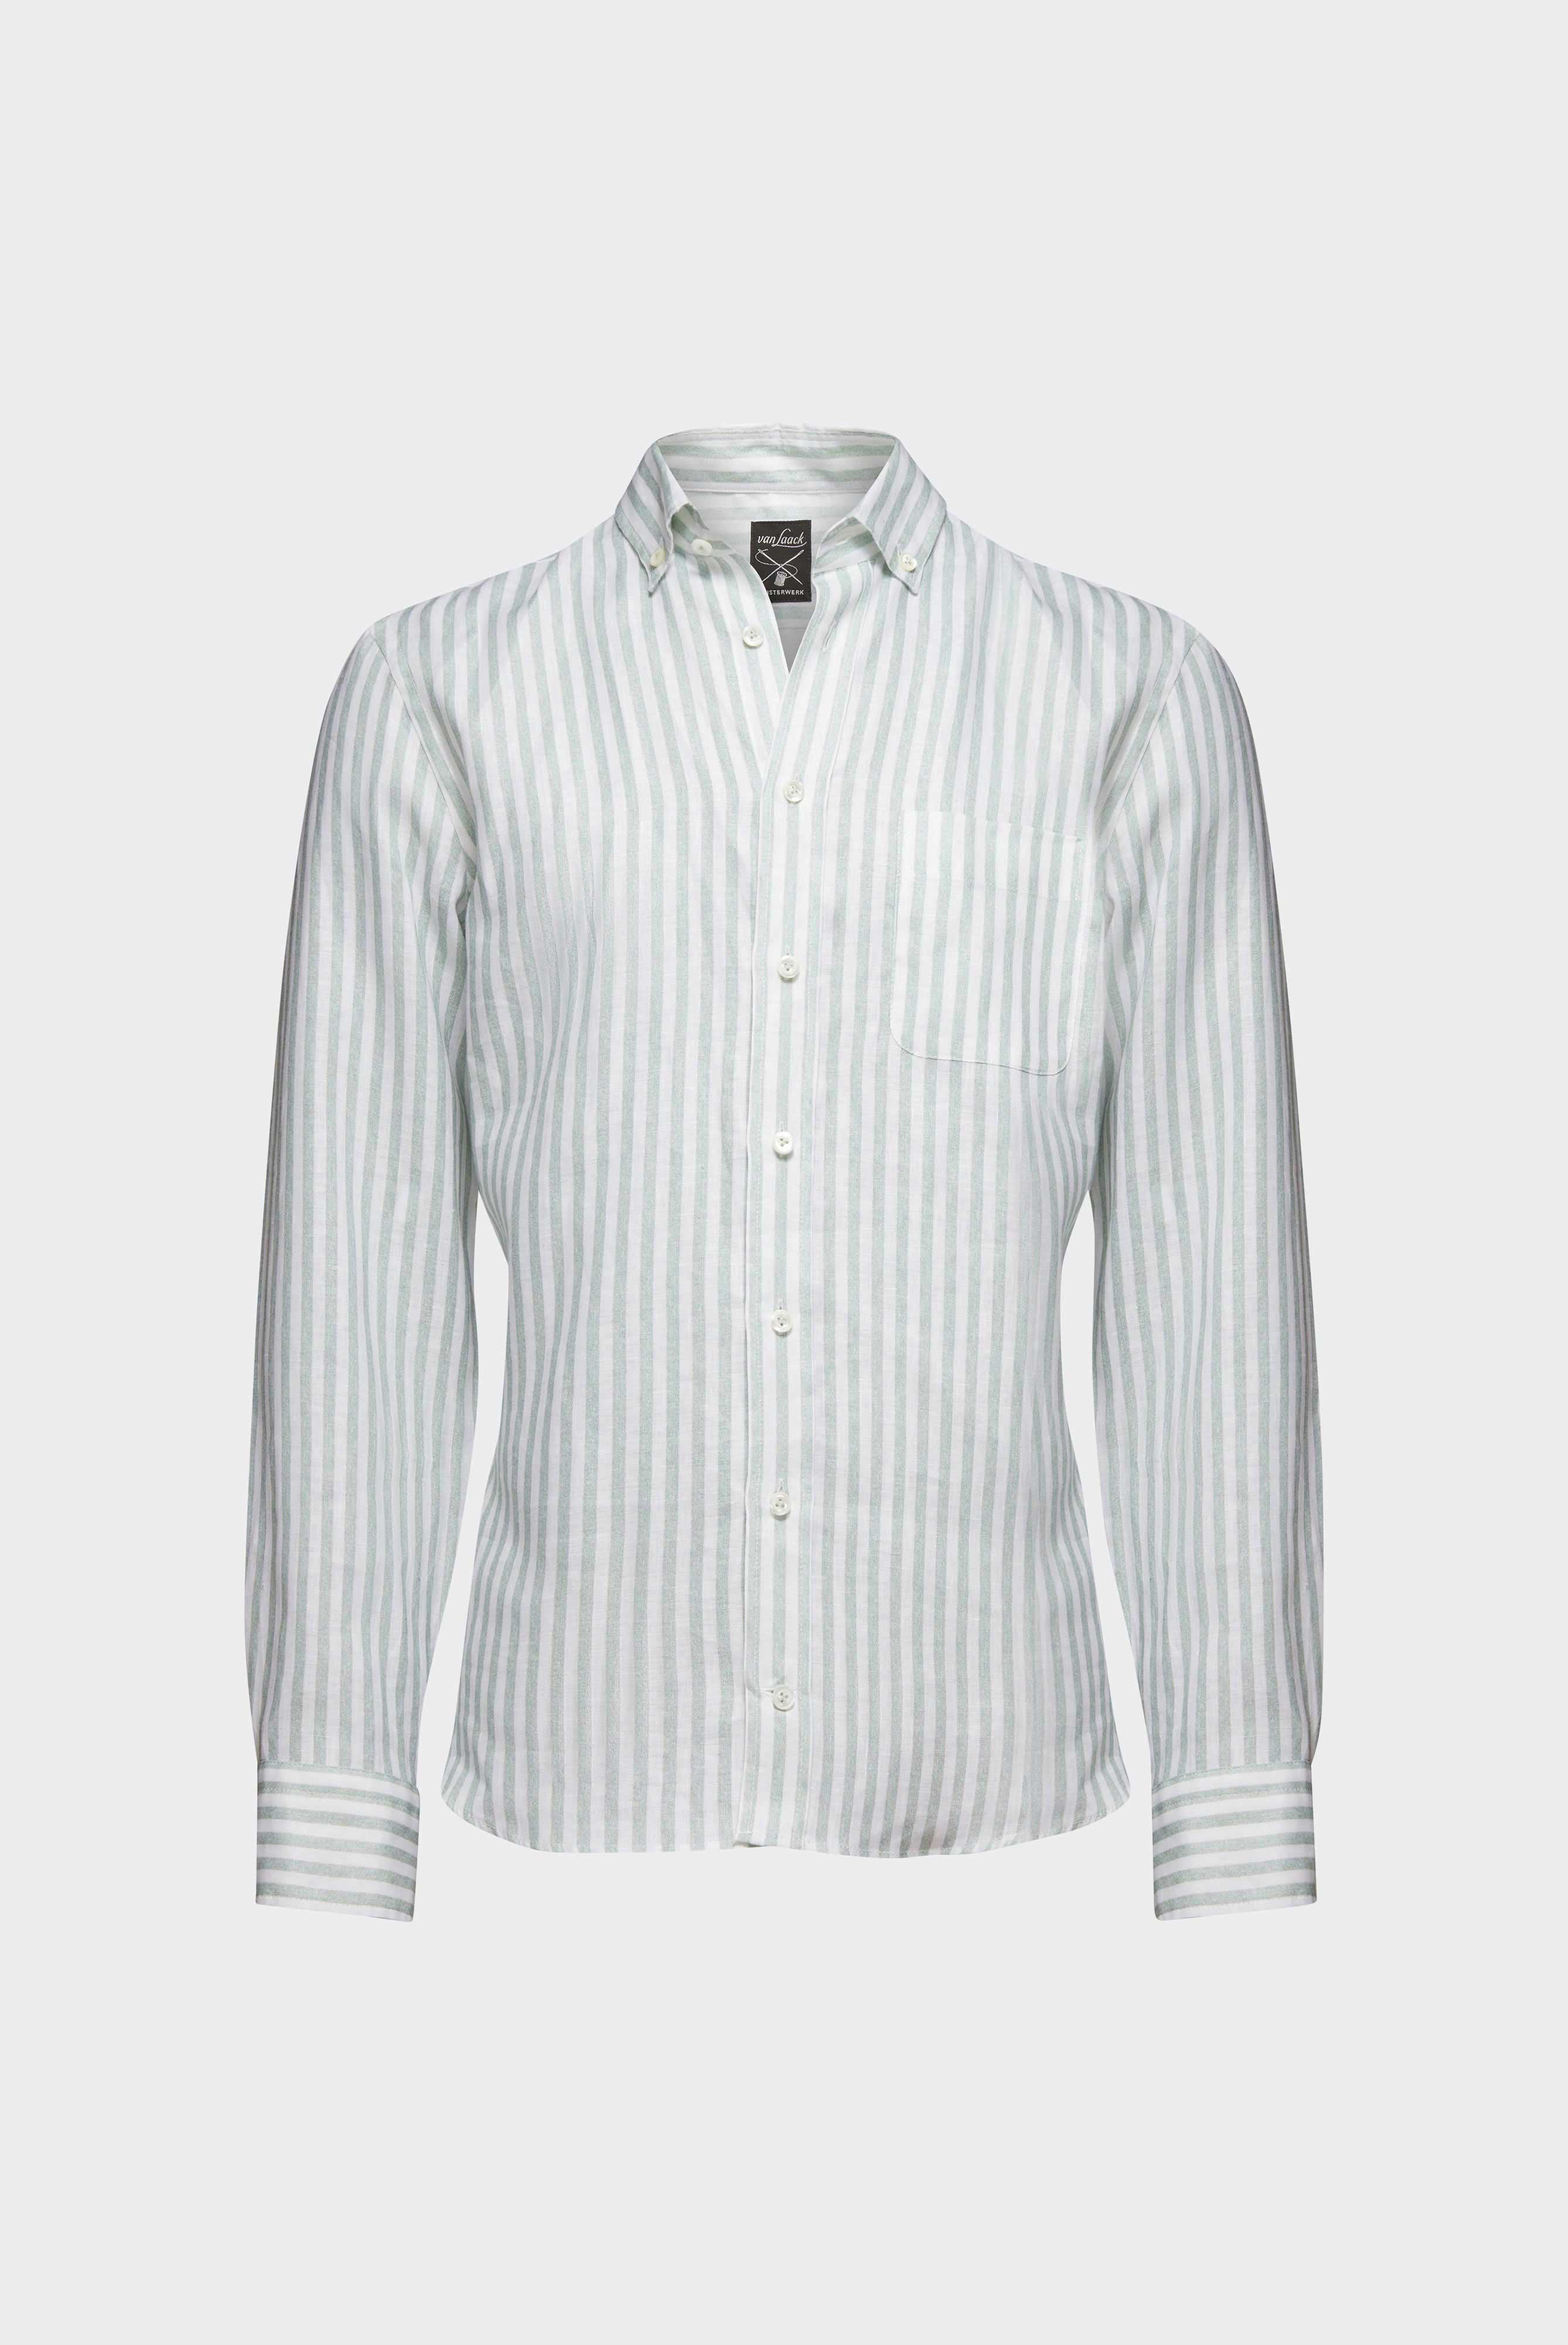 Casual Hemden+Leinenhemd mit Streifen-Druck Tailor Fit+20.2013.9V.170352.940.40